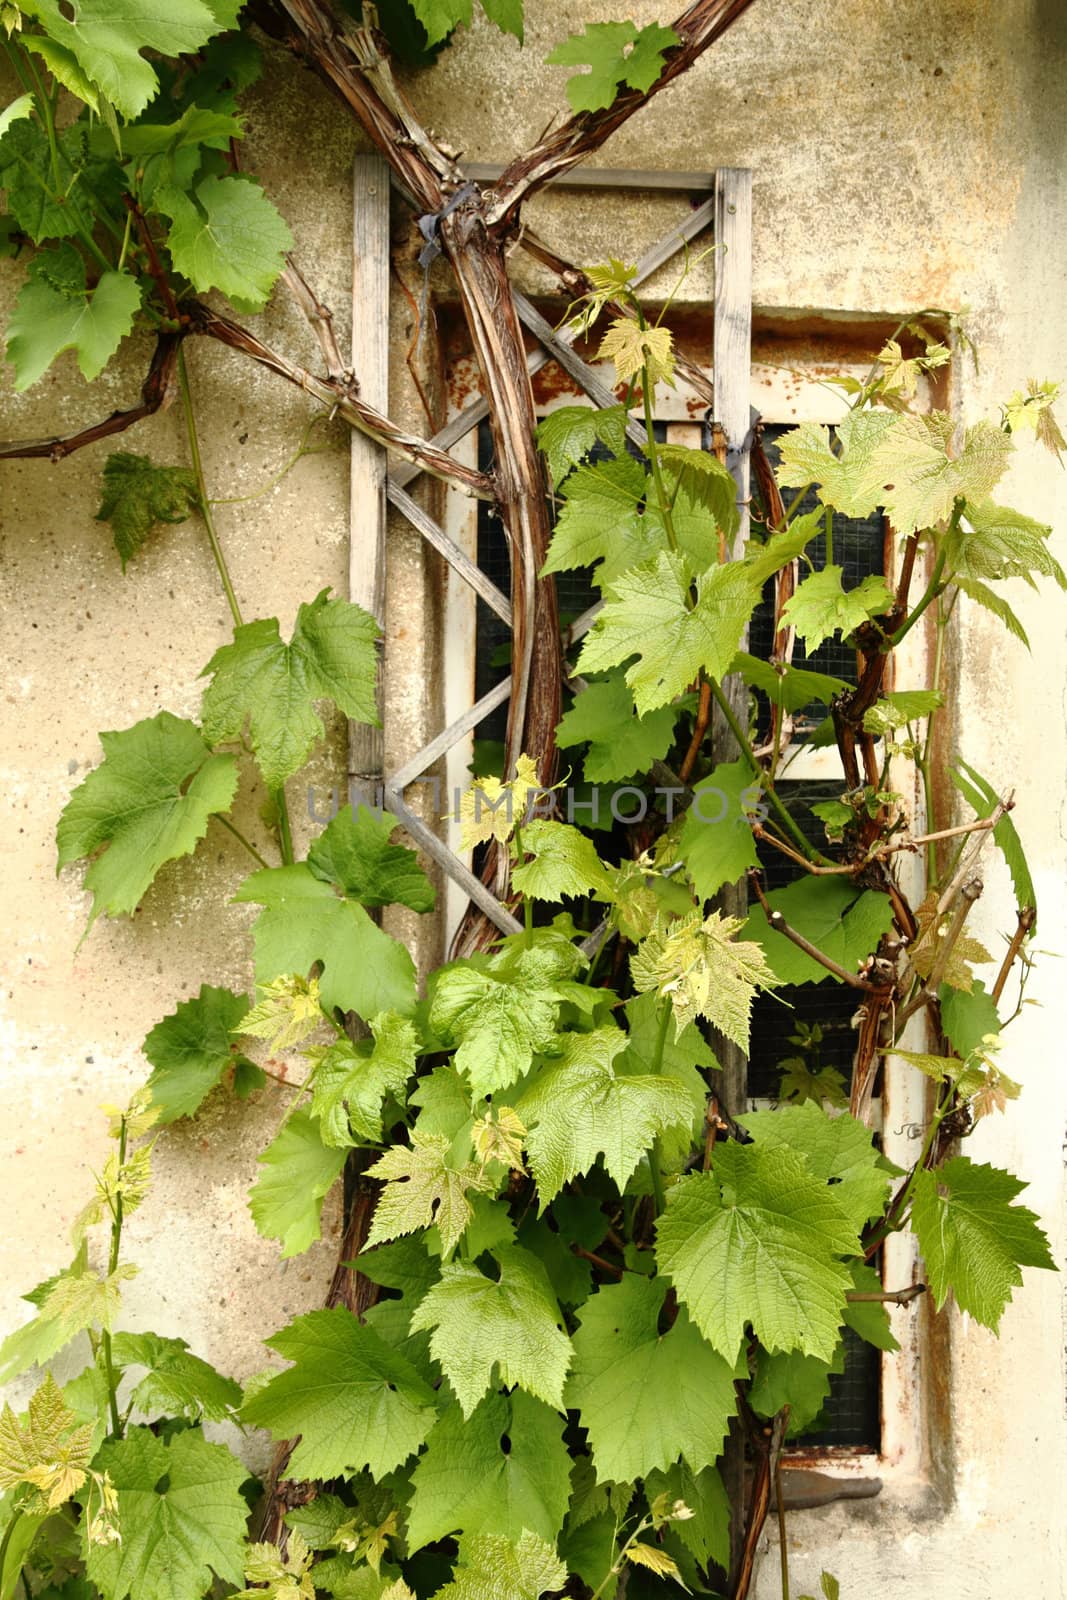 wine leaves on the old windows by jonnysek